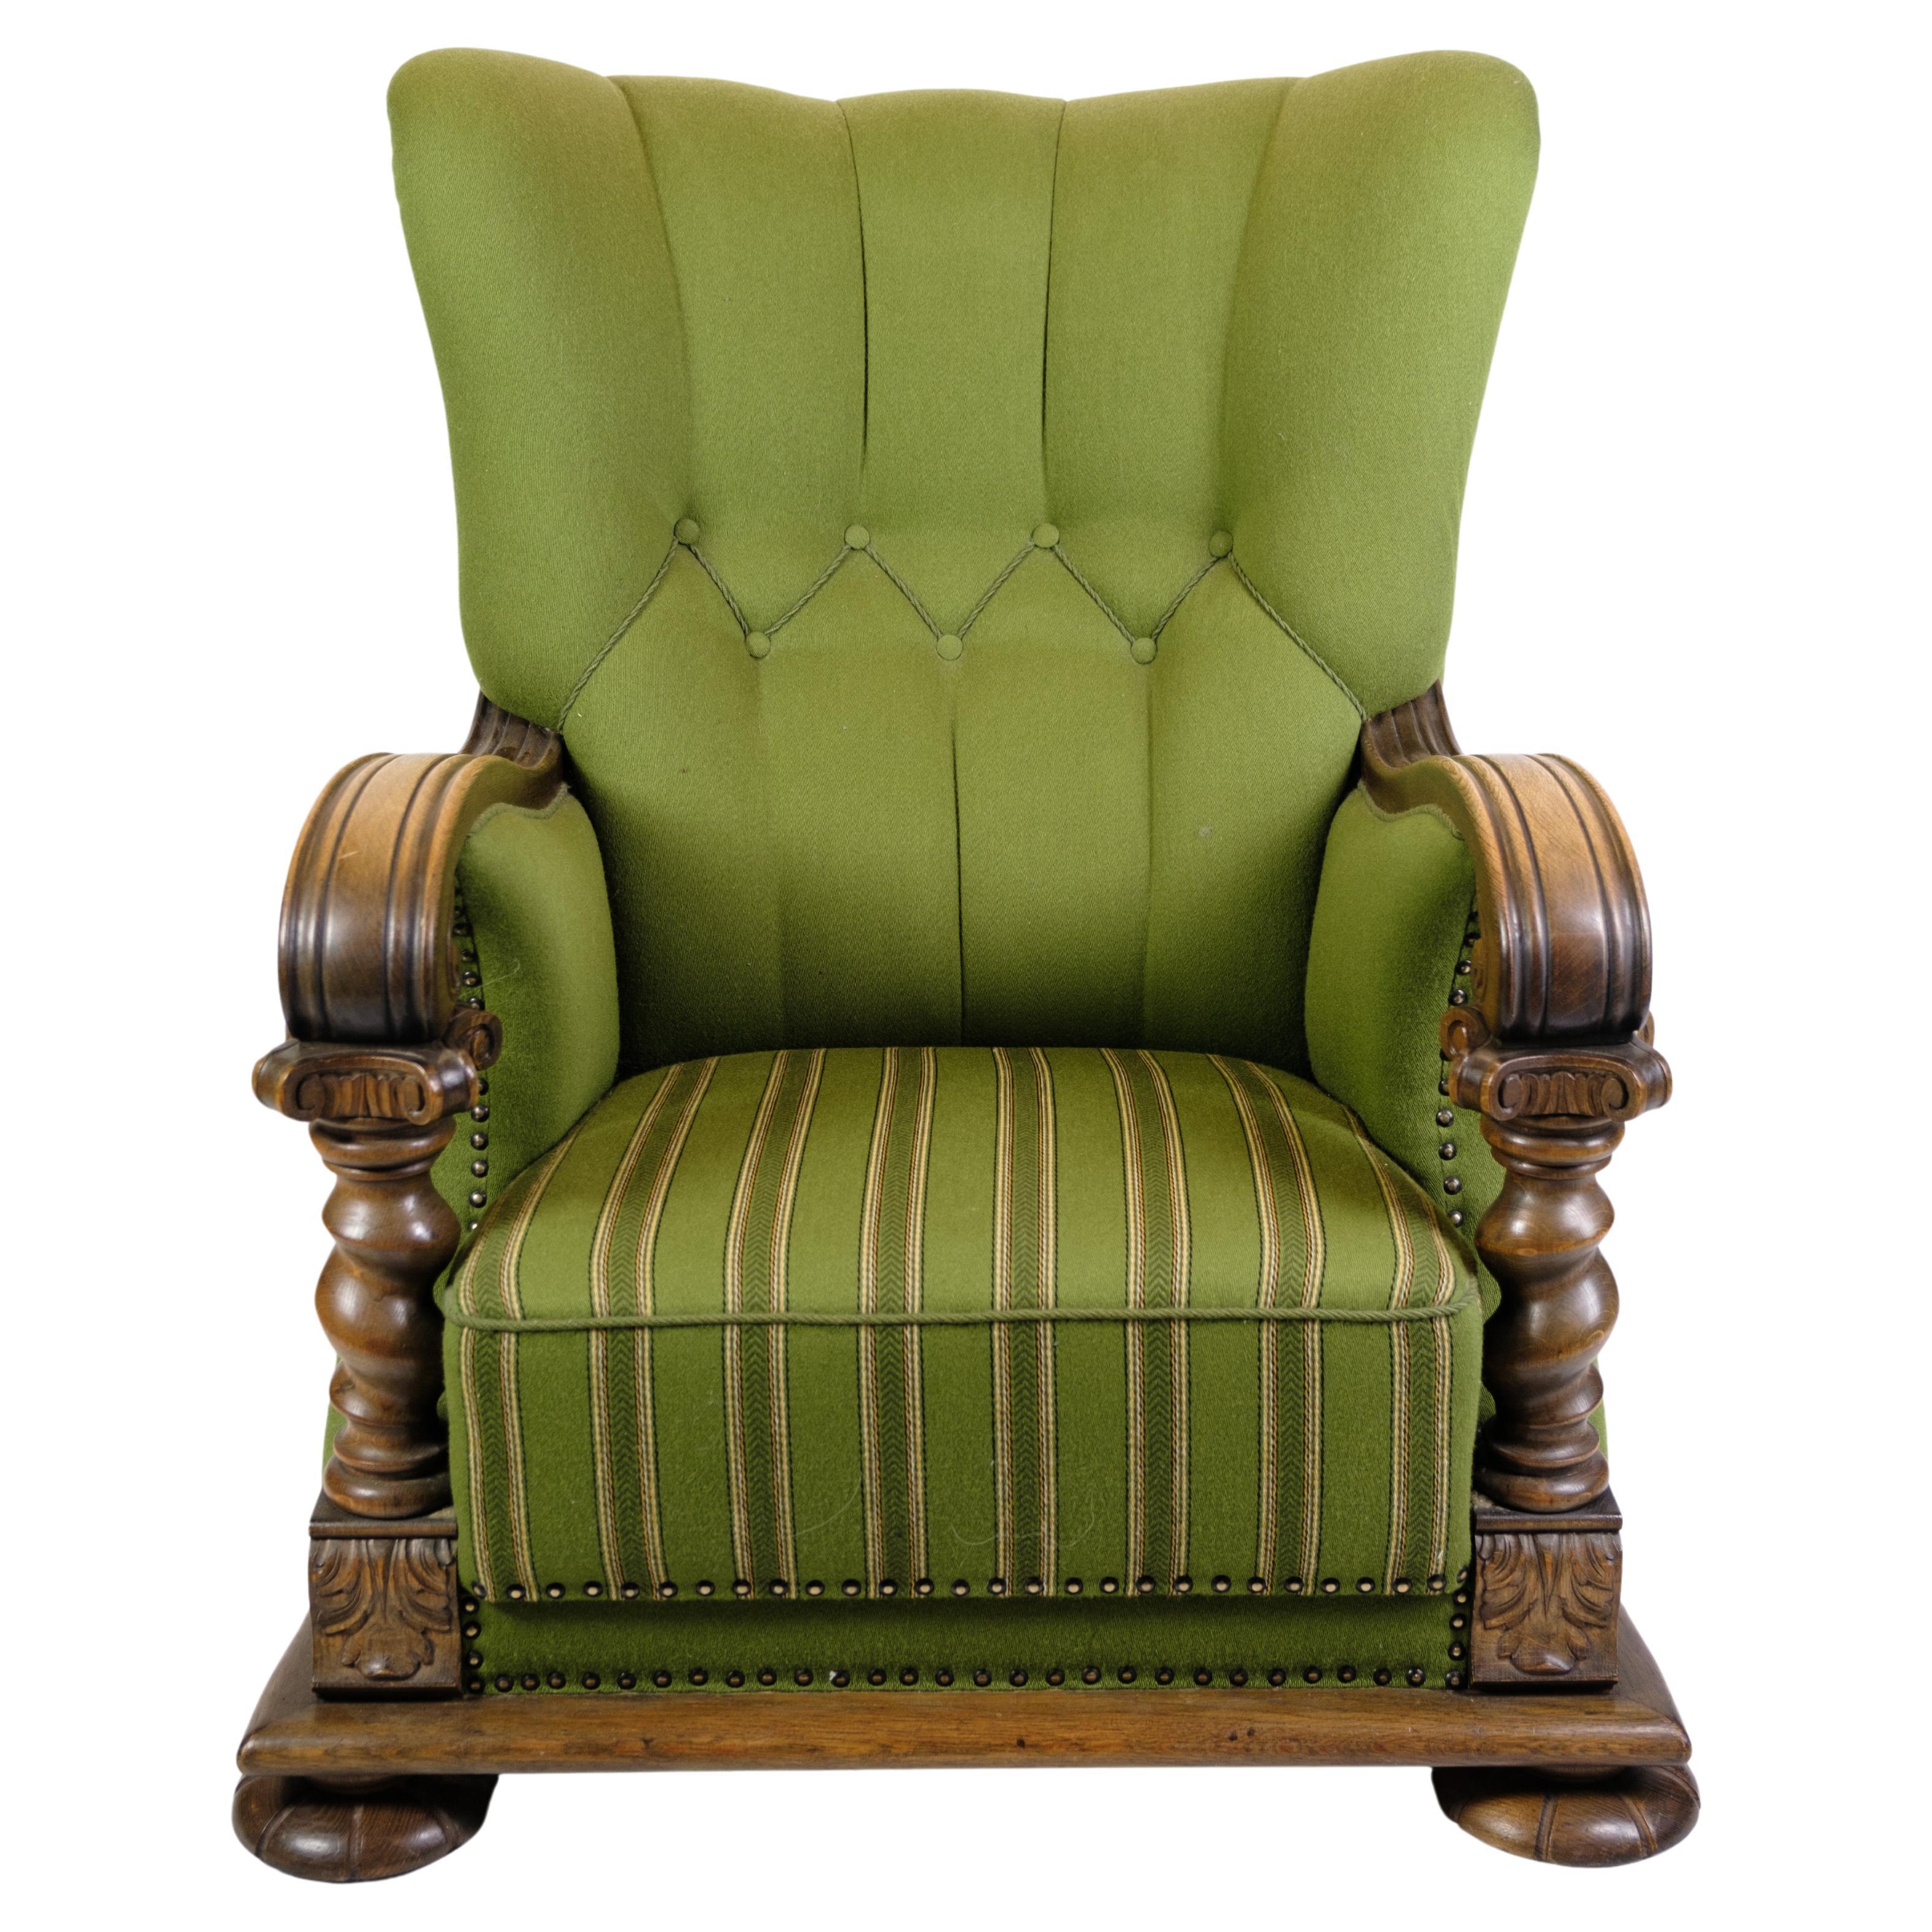 Hochlehniger Sessel in grünem Stoff mit Holzschnitzereien aus den 1920er Jahren.